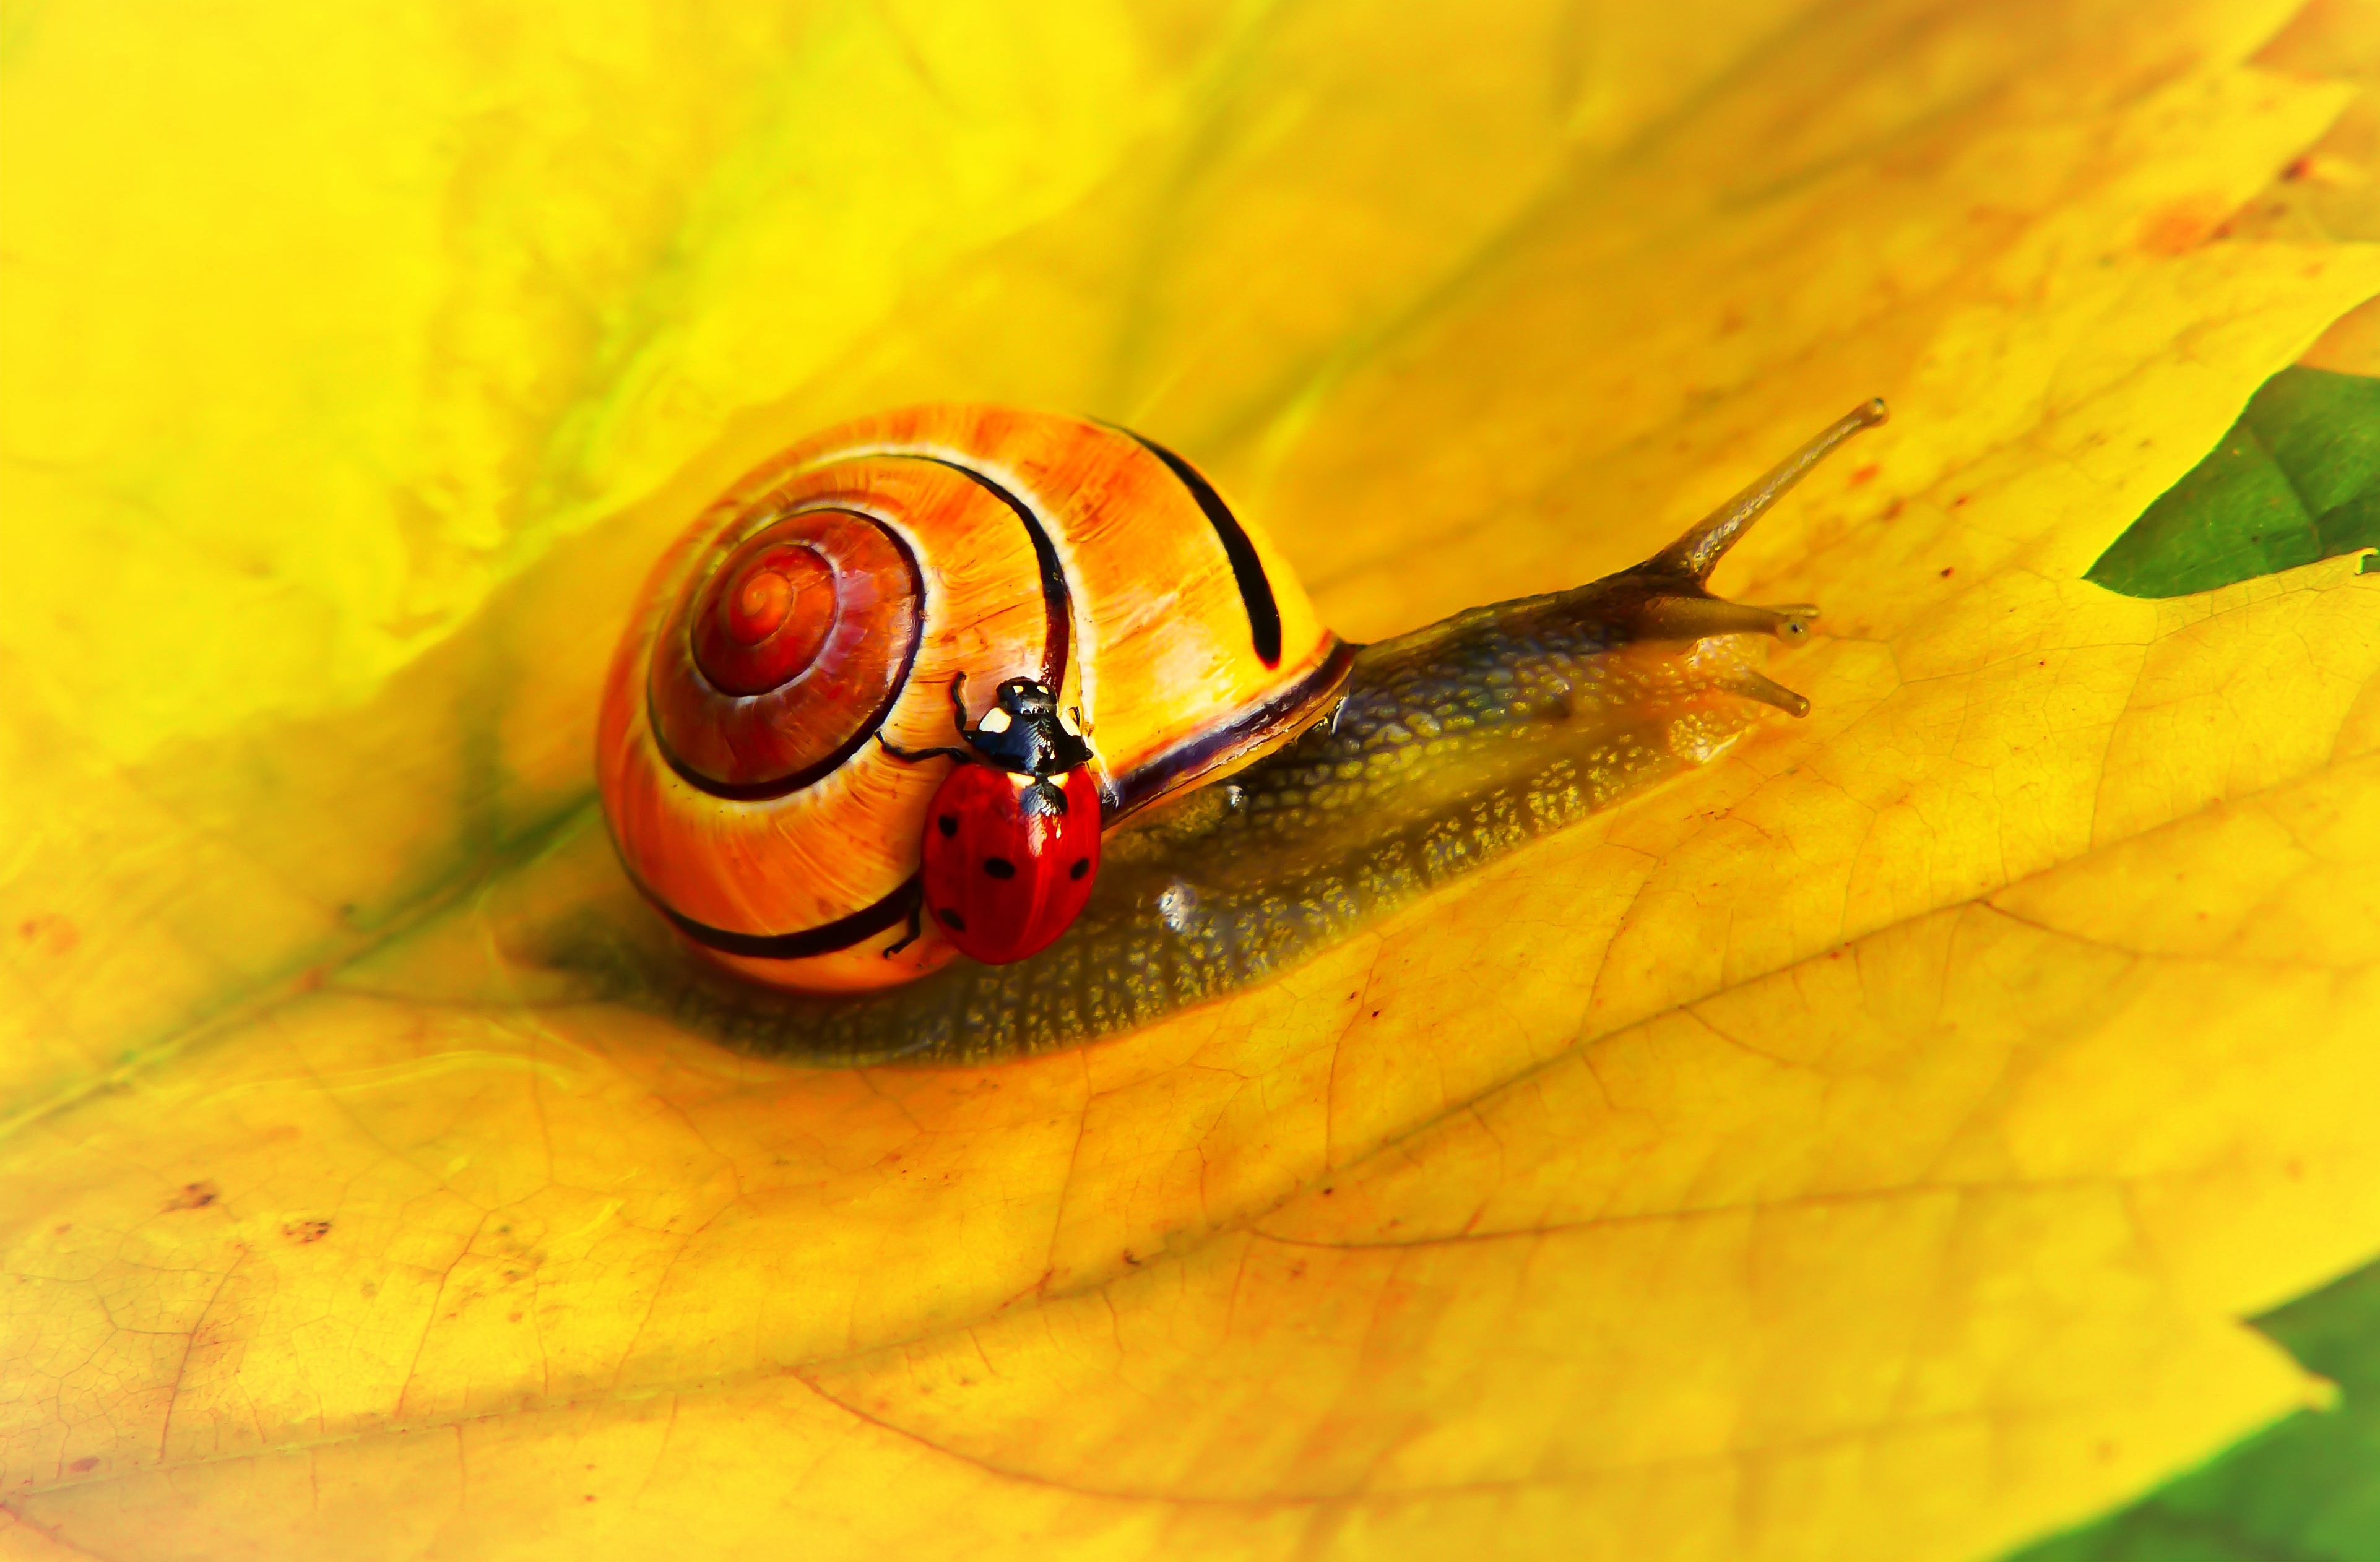 A ladybug on a snail